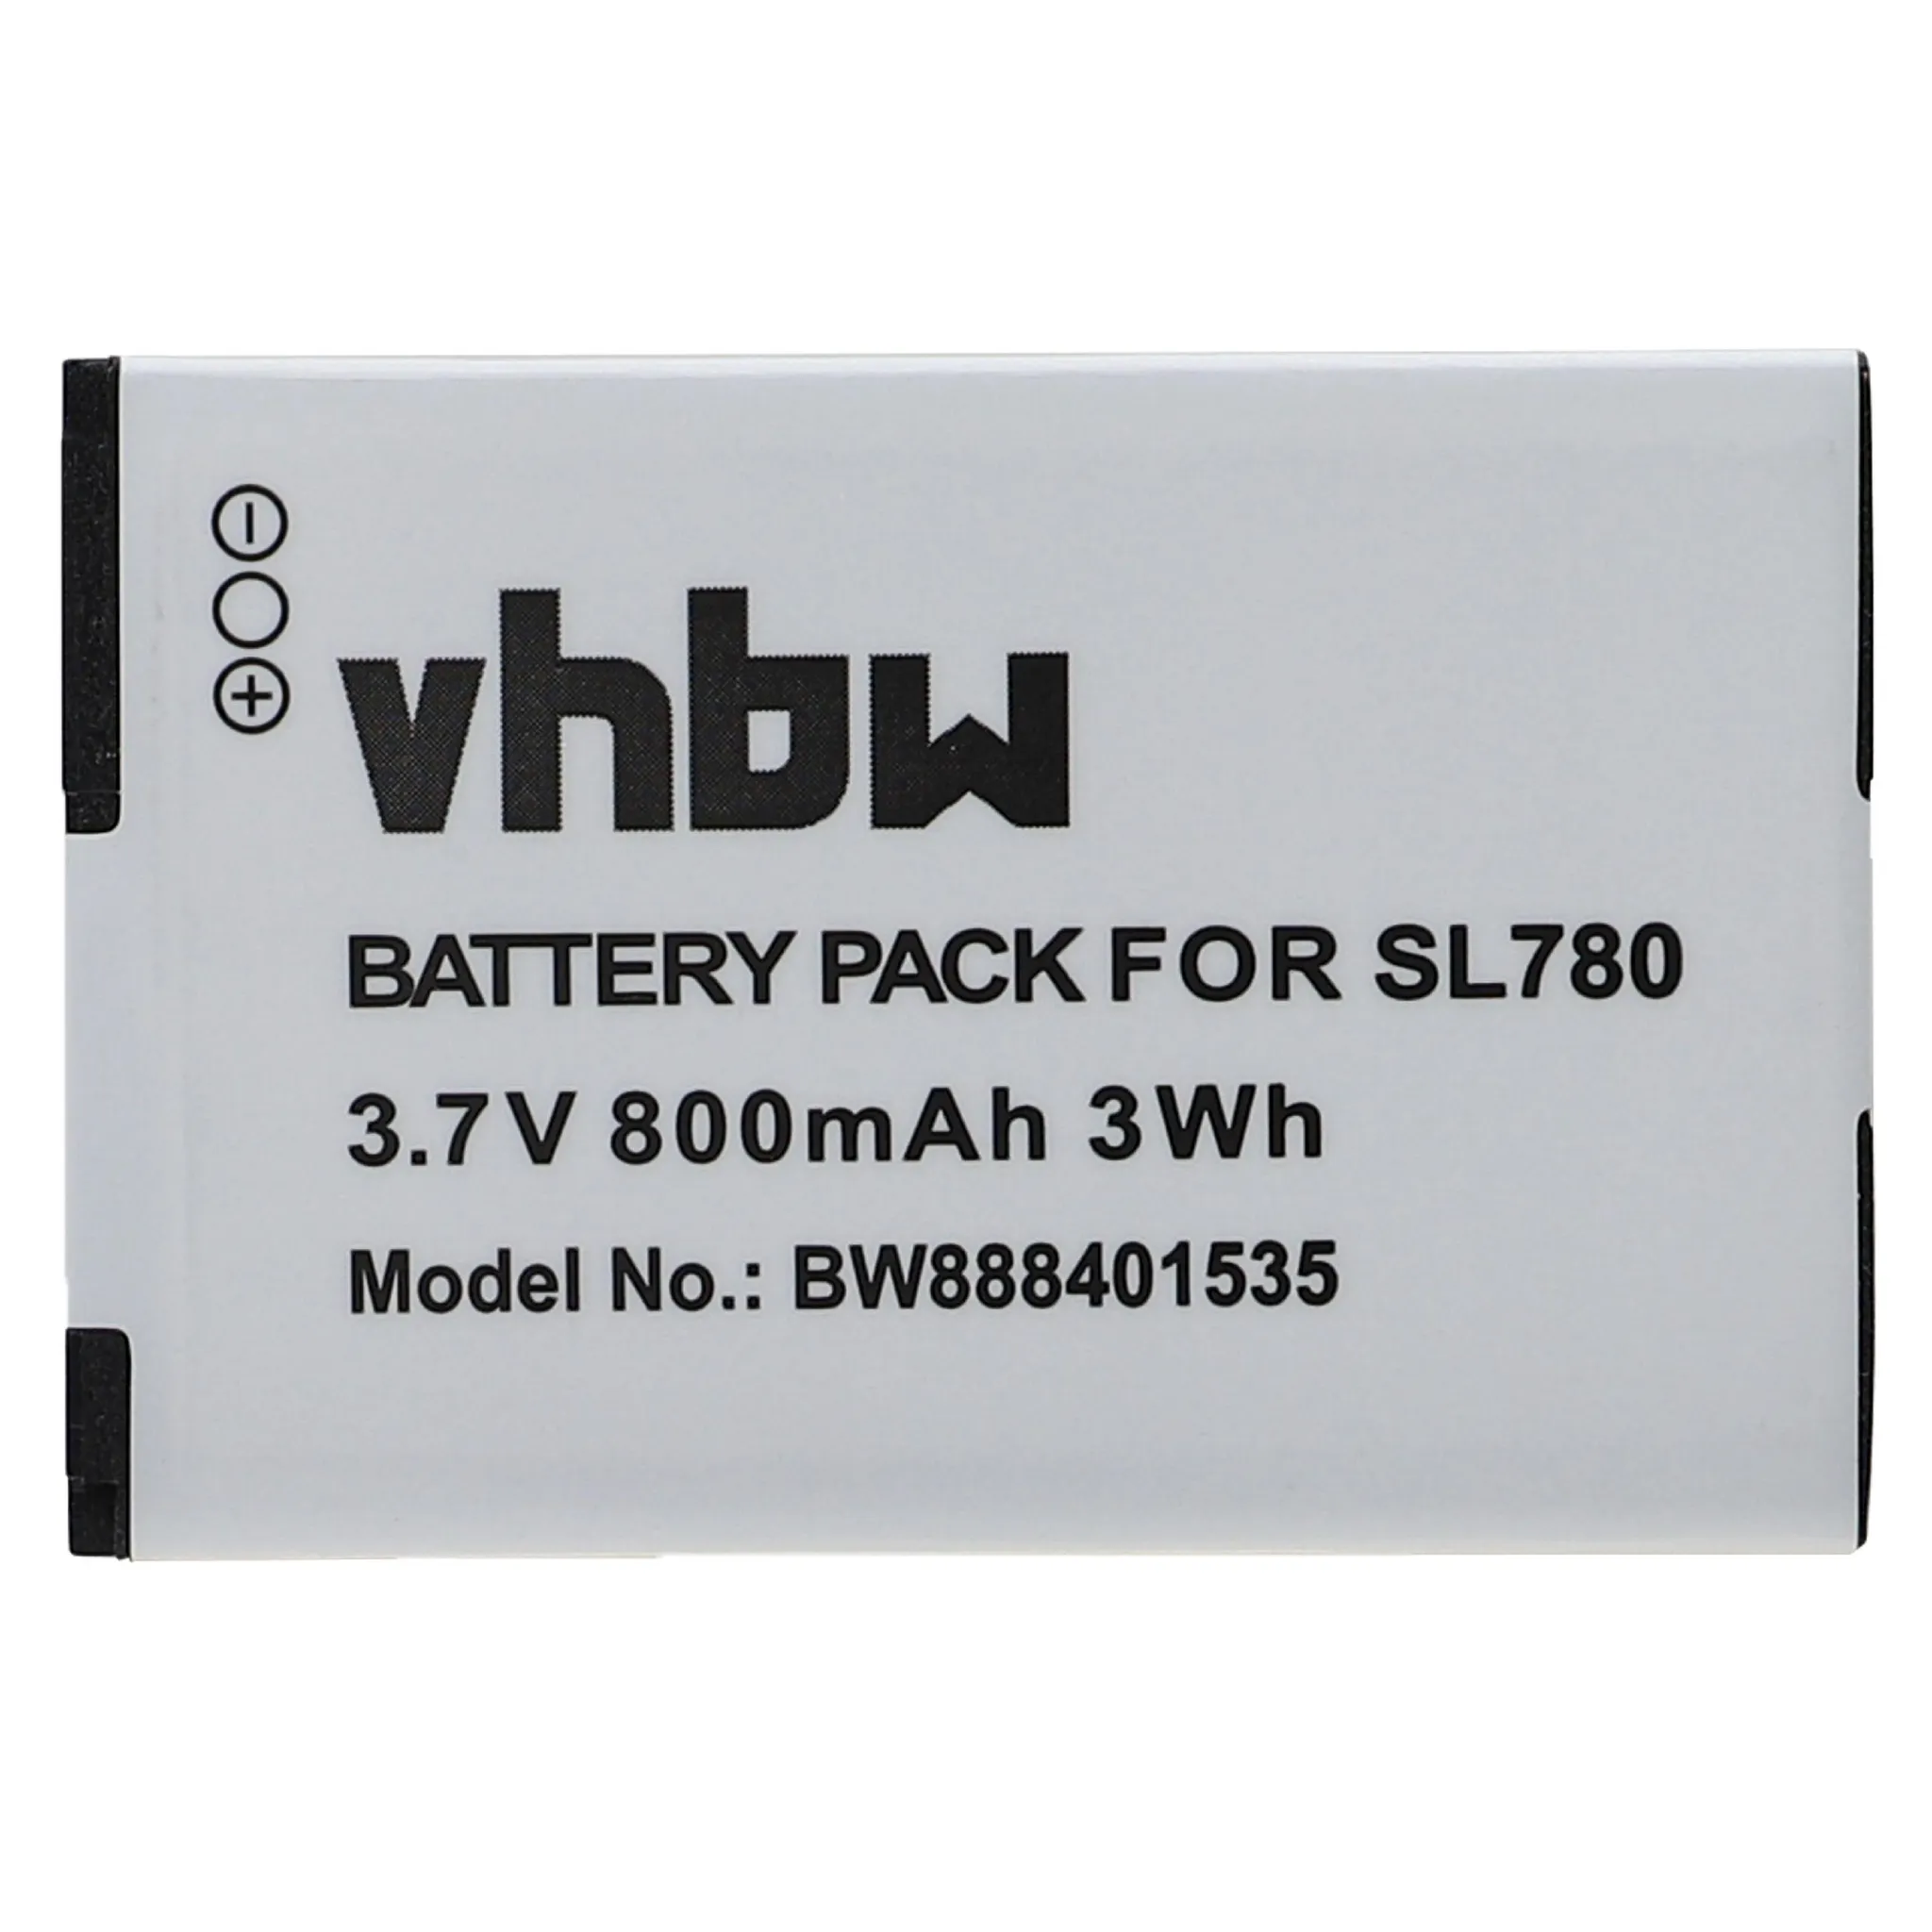 Batterie adaptée pour Siemens Gigaset V30145-K1310K-X444, V30145-K1310-X445, Gigaset SL785, Siemens, Batteries pour téléphones DECT, Batteries